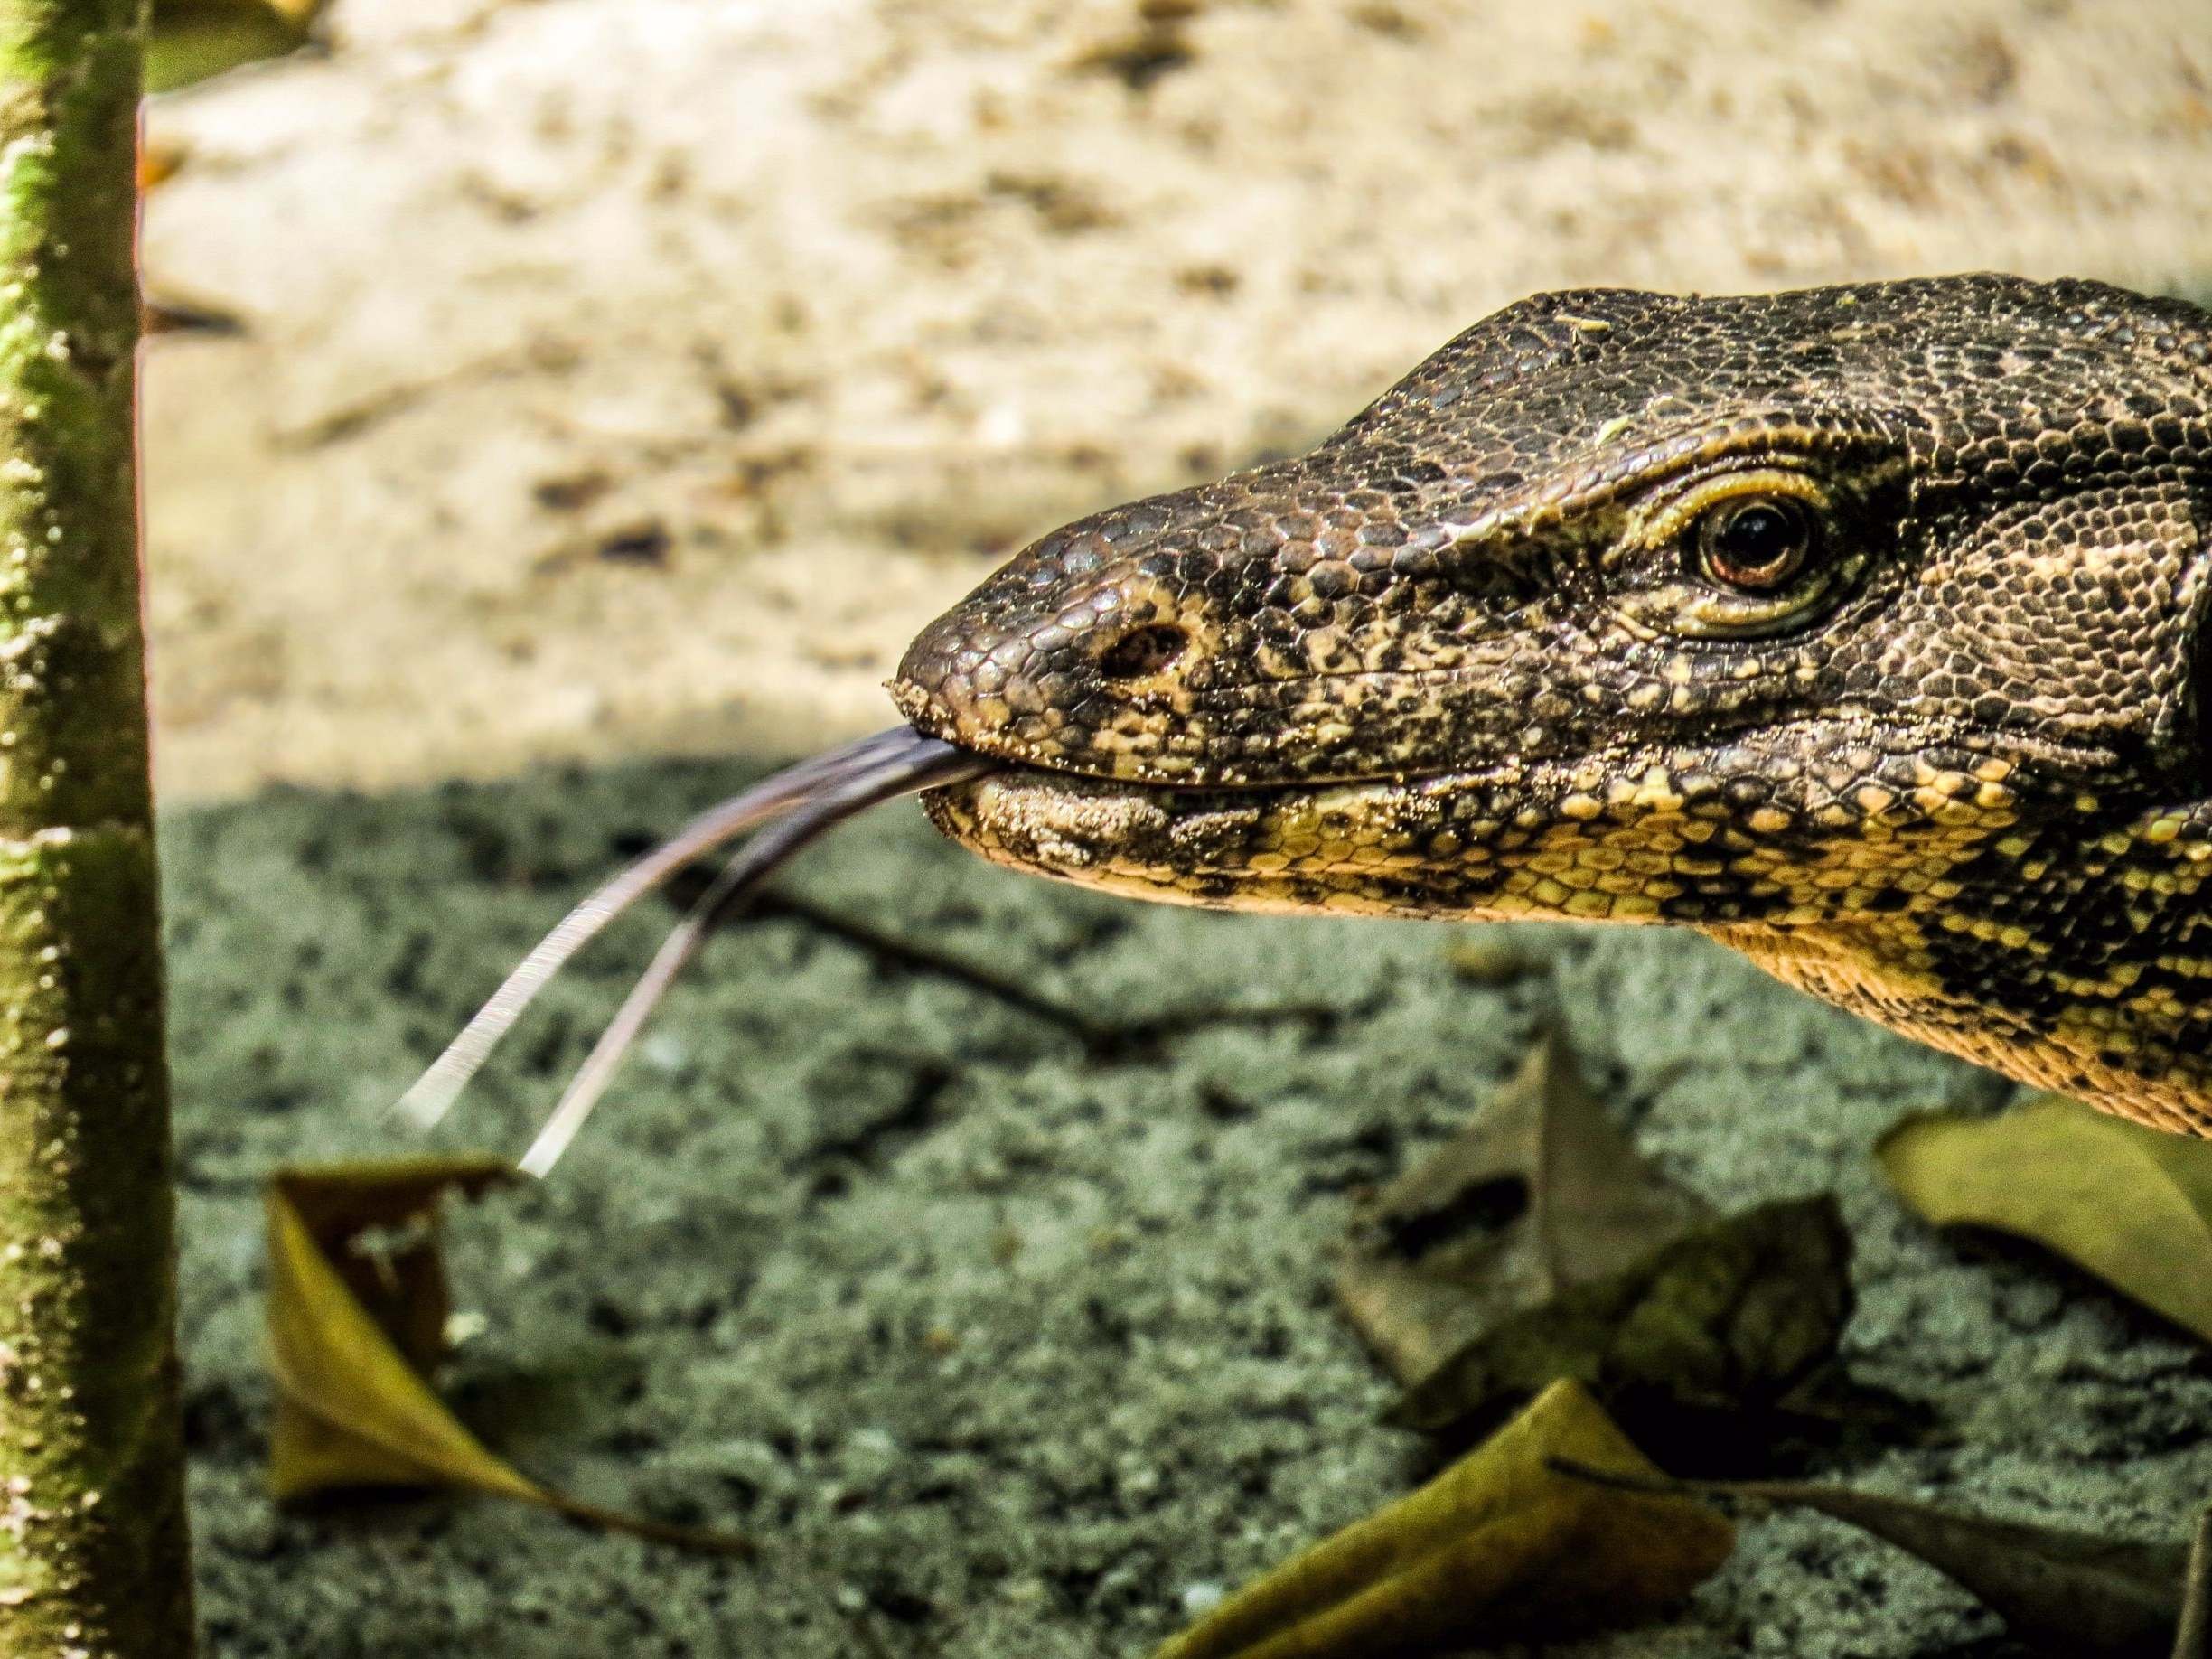 Lizard in Hong Island, Thailand.